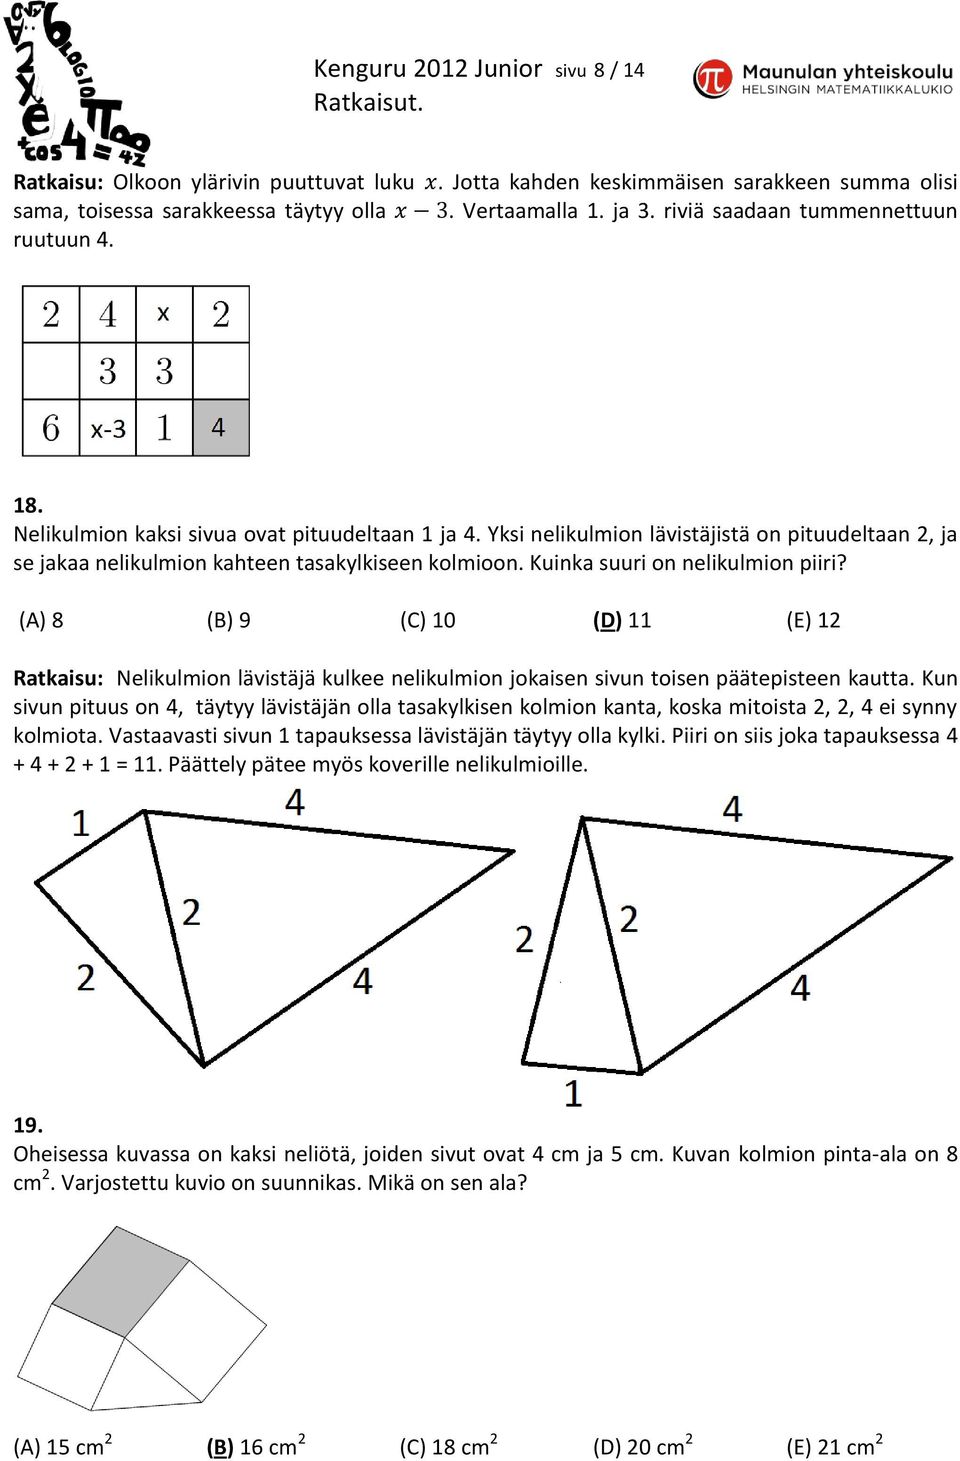 Kuinka suuri on nelikulmion piiri? (A) 8 (B) 9 (C) 10 (D) 11 (E) 12 Ratkaisu: Nelikulmion lävistäjä kulkee nelikulmion jokaisen sivun toisen päätepisteen kautta.